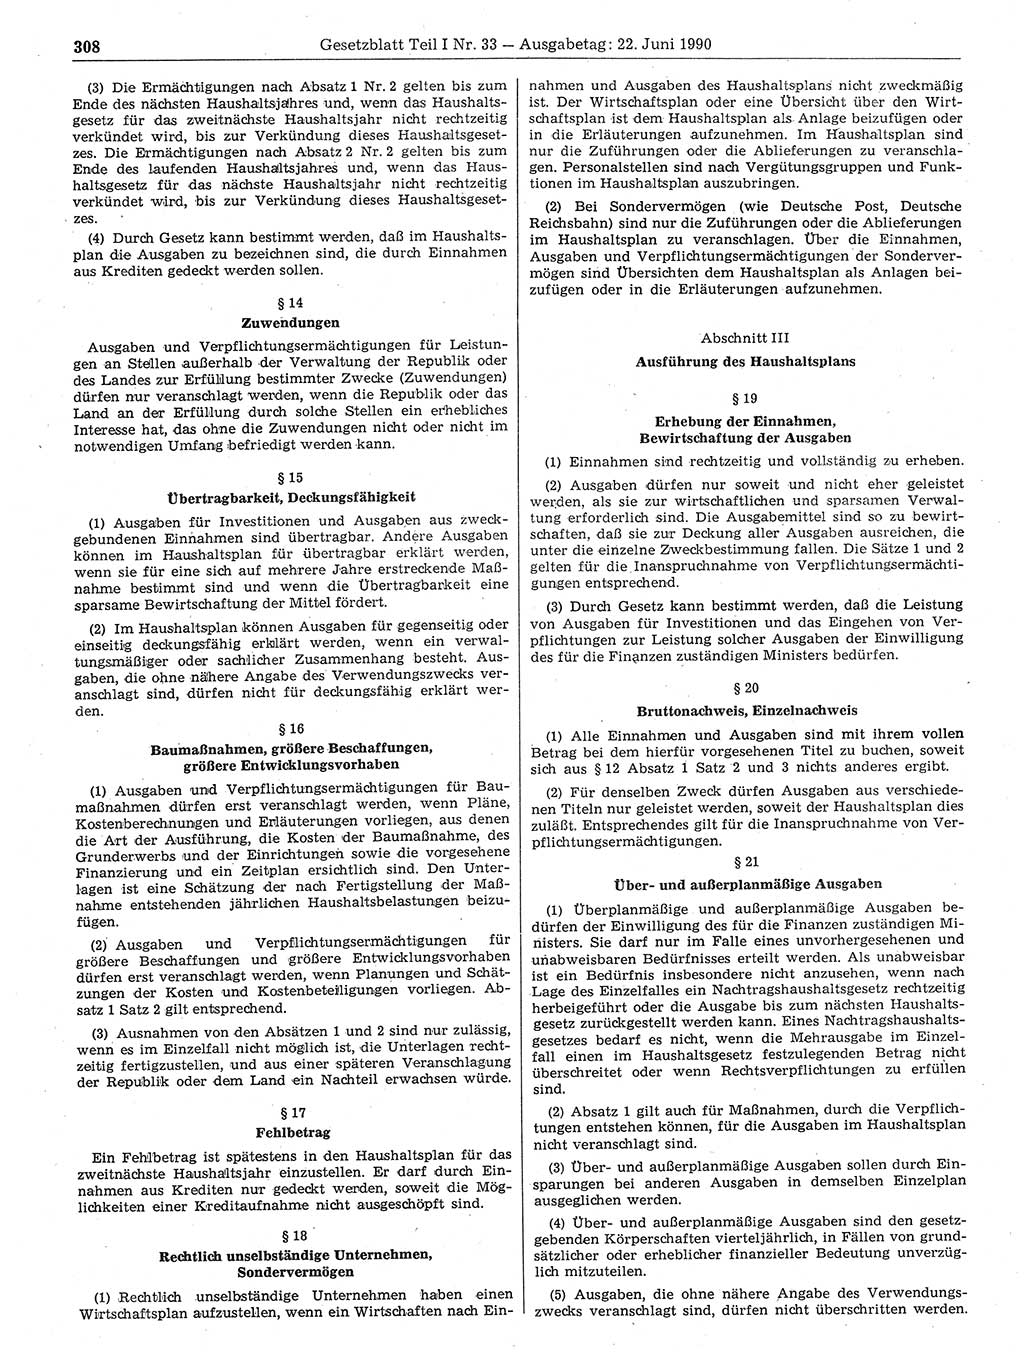 Gesetzblatt (GBl.) der Deutschen Demokratischen Republik (DDR) Teil Ⅰ 1990, Seite 308 (GBl. DDR Ⅰ 1990, S. 308)